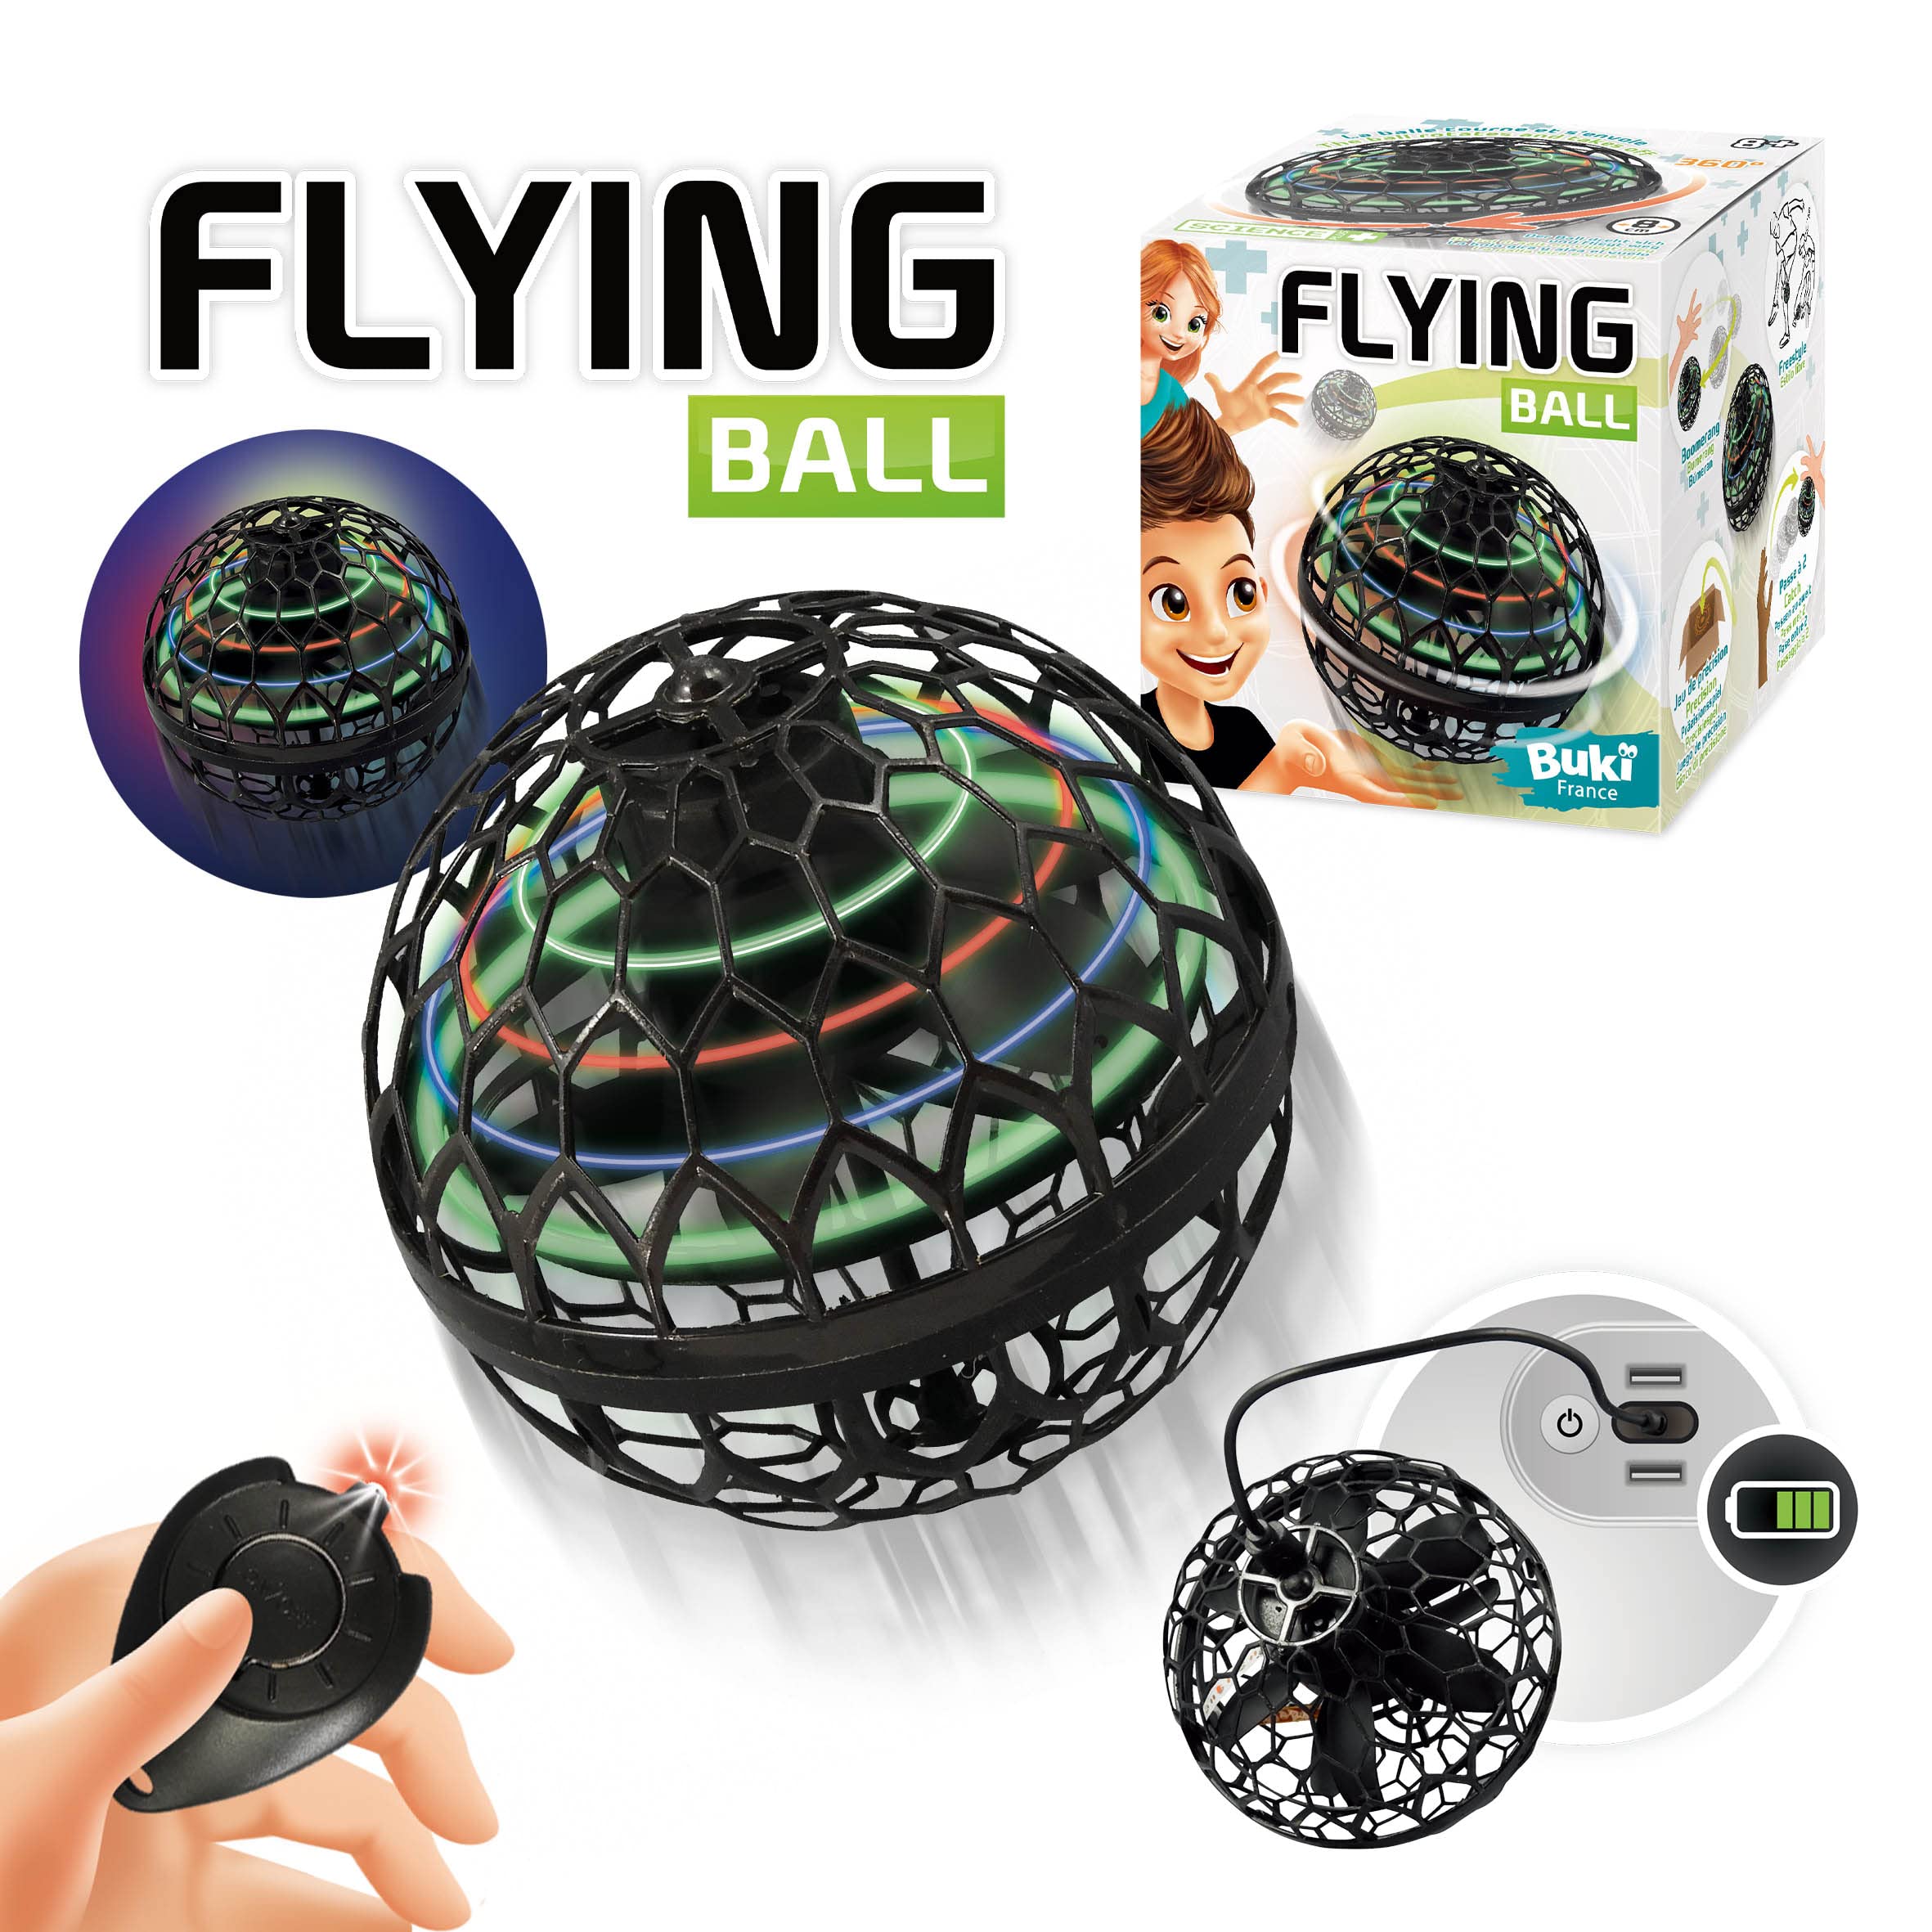 Balle volante-8cm-lumineuse télécommandée rechargeable+8ans – Orca